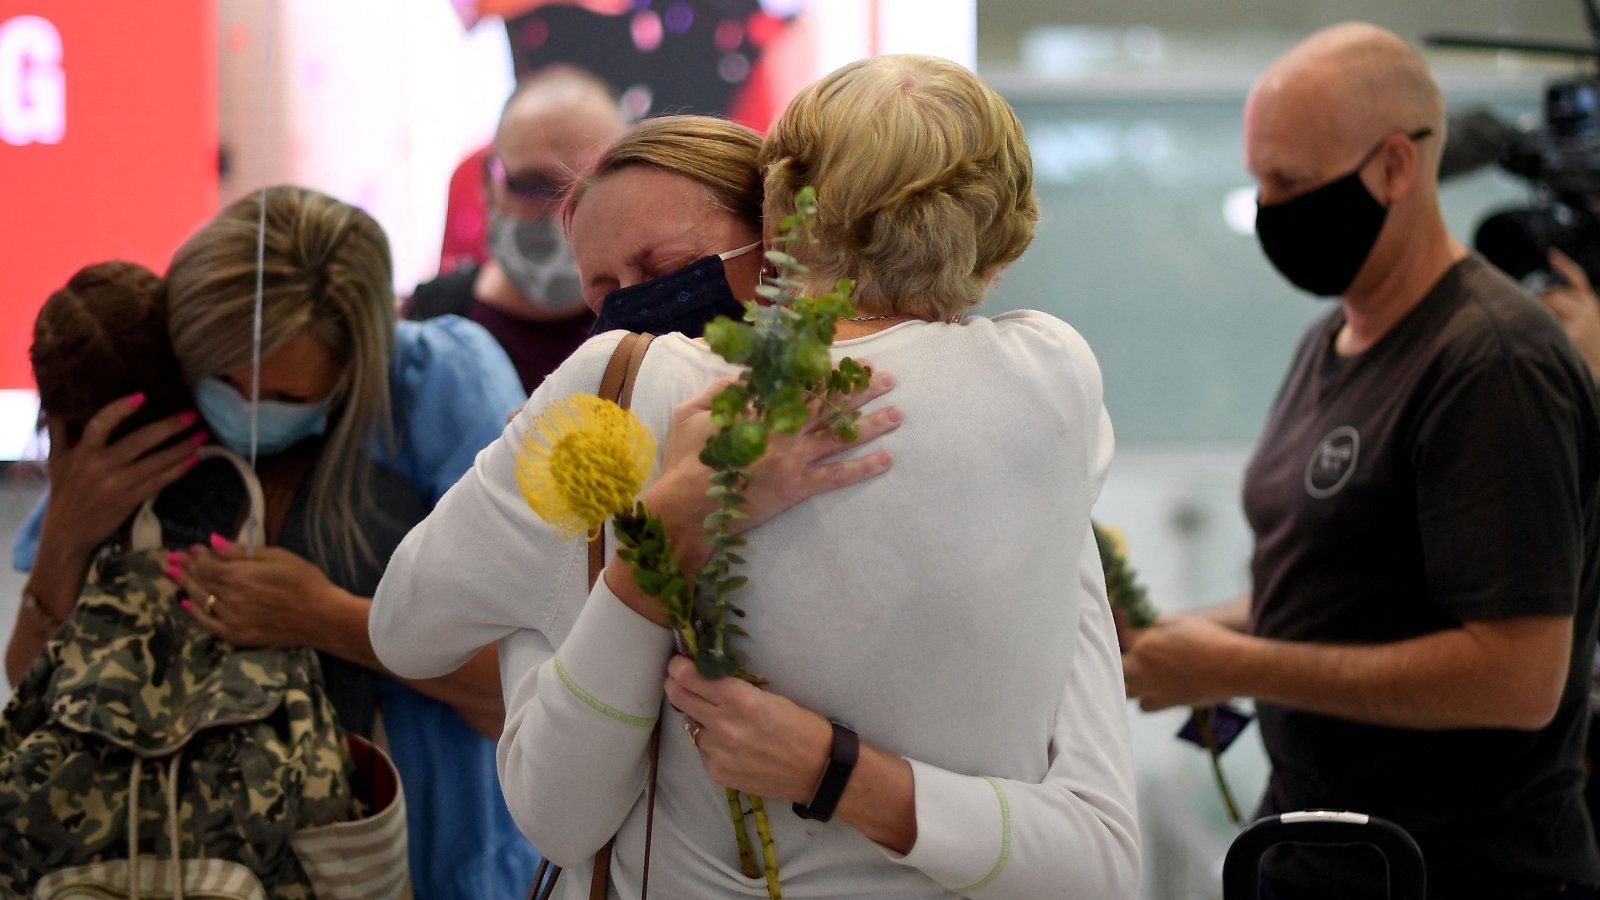 أفراد أسرة يحتفلون بلمّ شملهم عند وصولهم إلى مطار سيدني الدولي في 1 تشرين الثاني/نوفمبر 2021، حيث أعيد فتح الحدود الدولية لأستراليا بعد 600 يوم تقريبًا من بدء الإغلاق الوبائي.